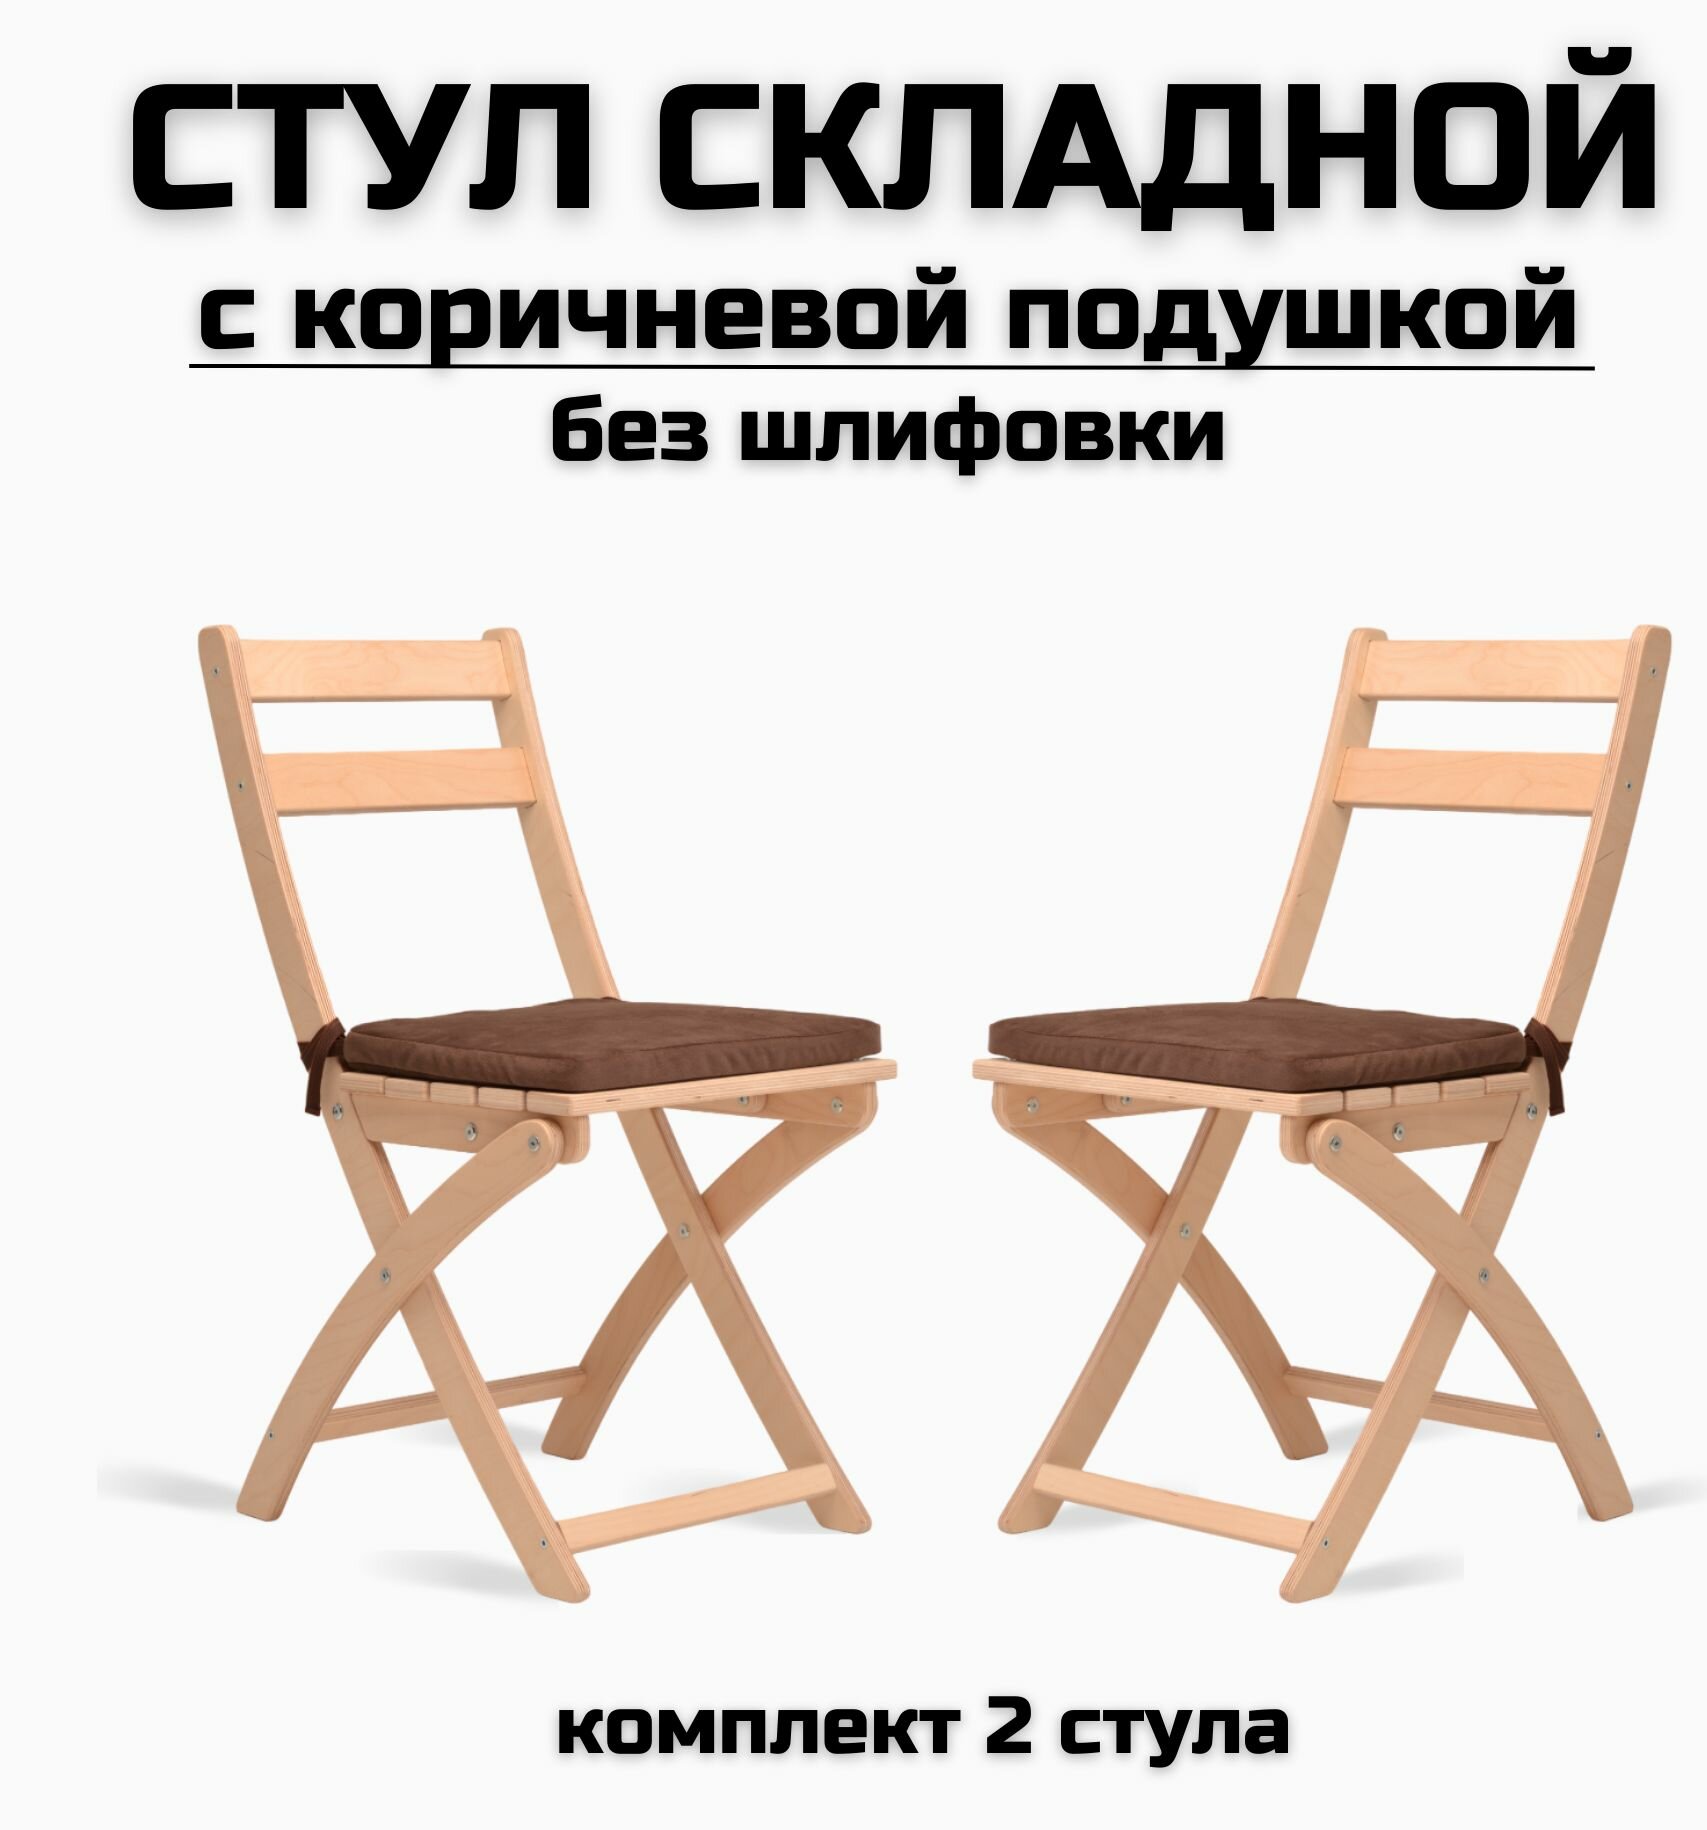 Складной стул деревянный с коричневой подушкой для дома, для кухни, для дачи, без шлифовки комплект 2 стула